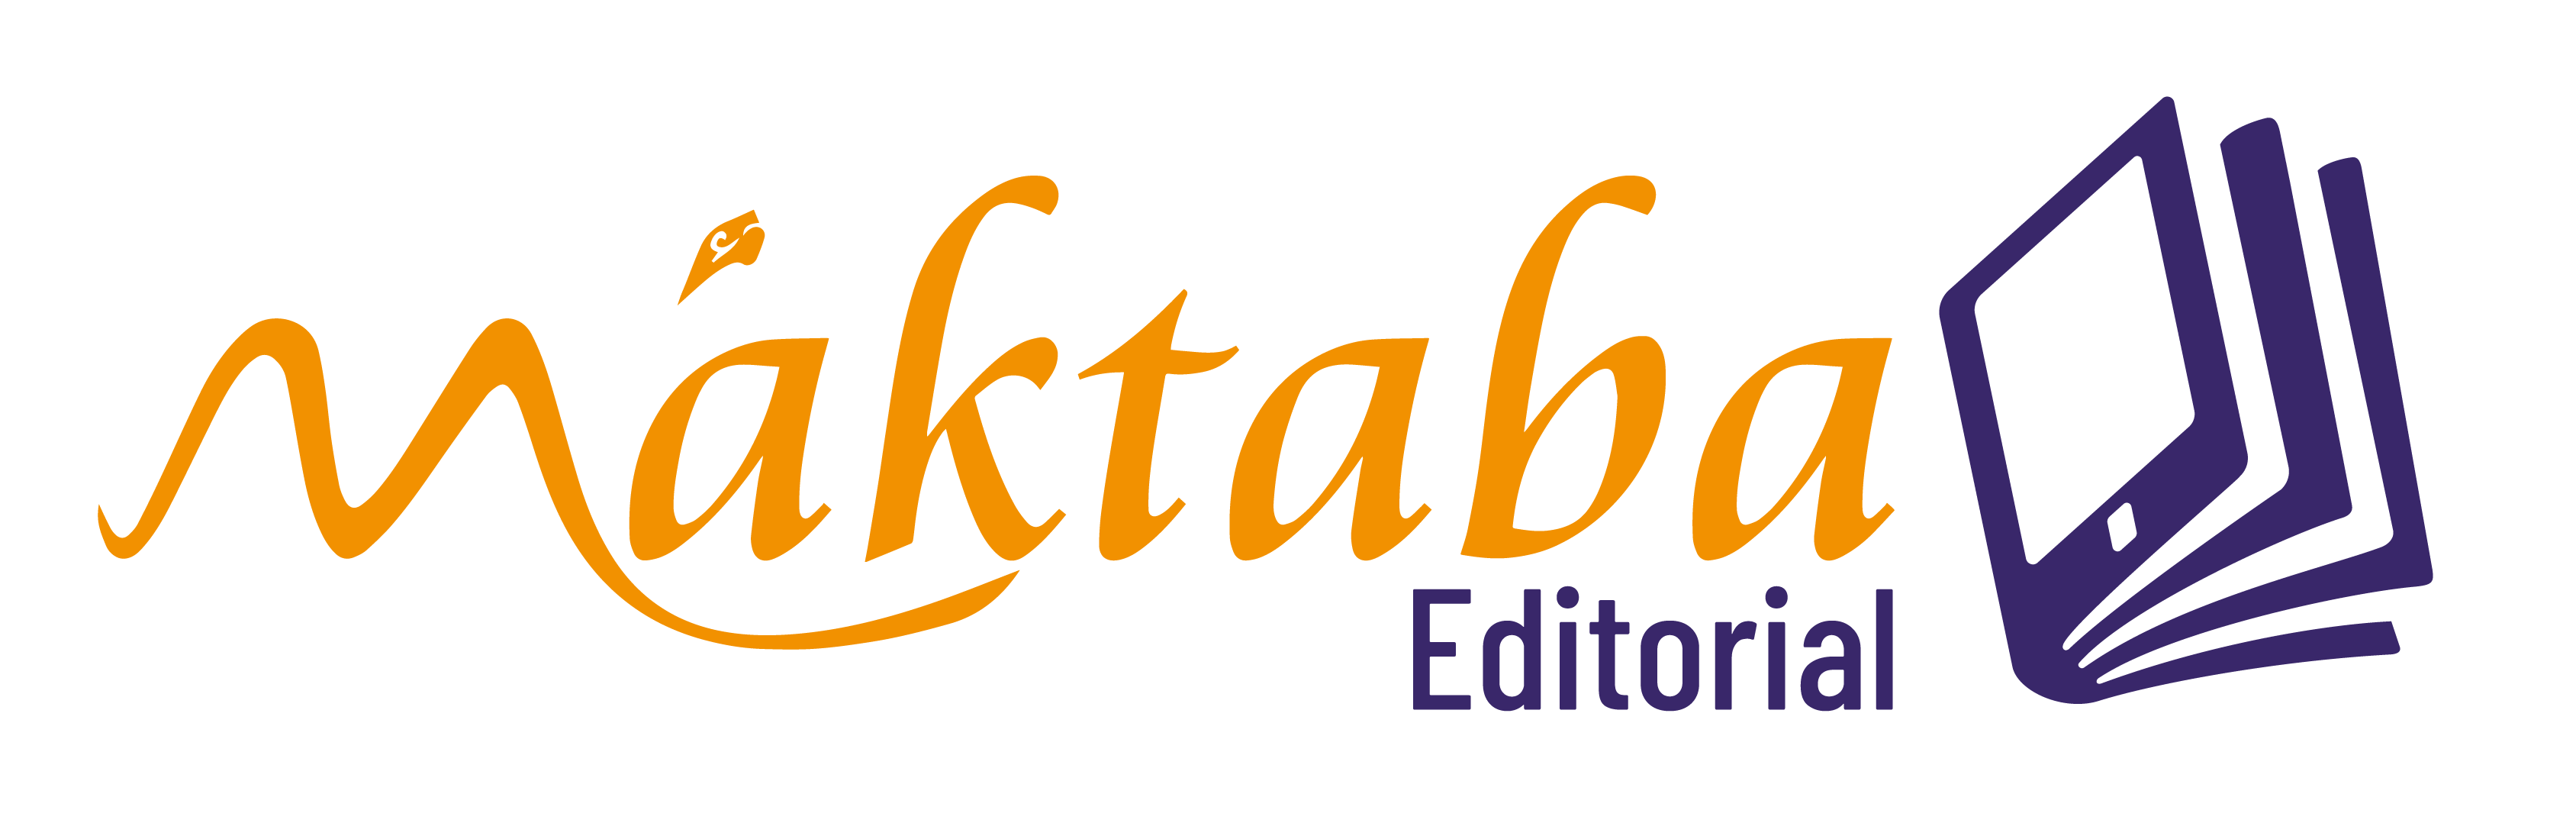 editorial Maktaba